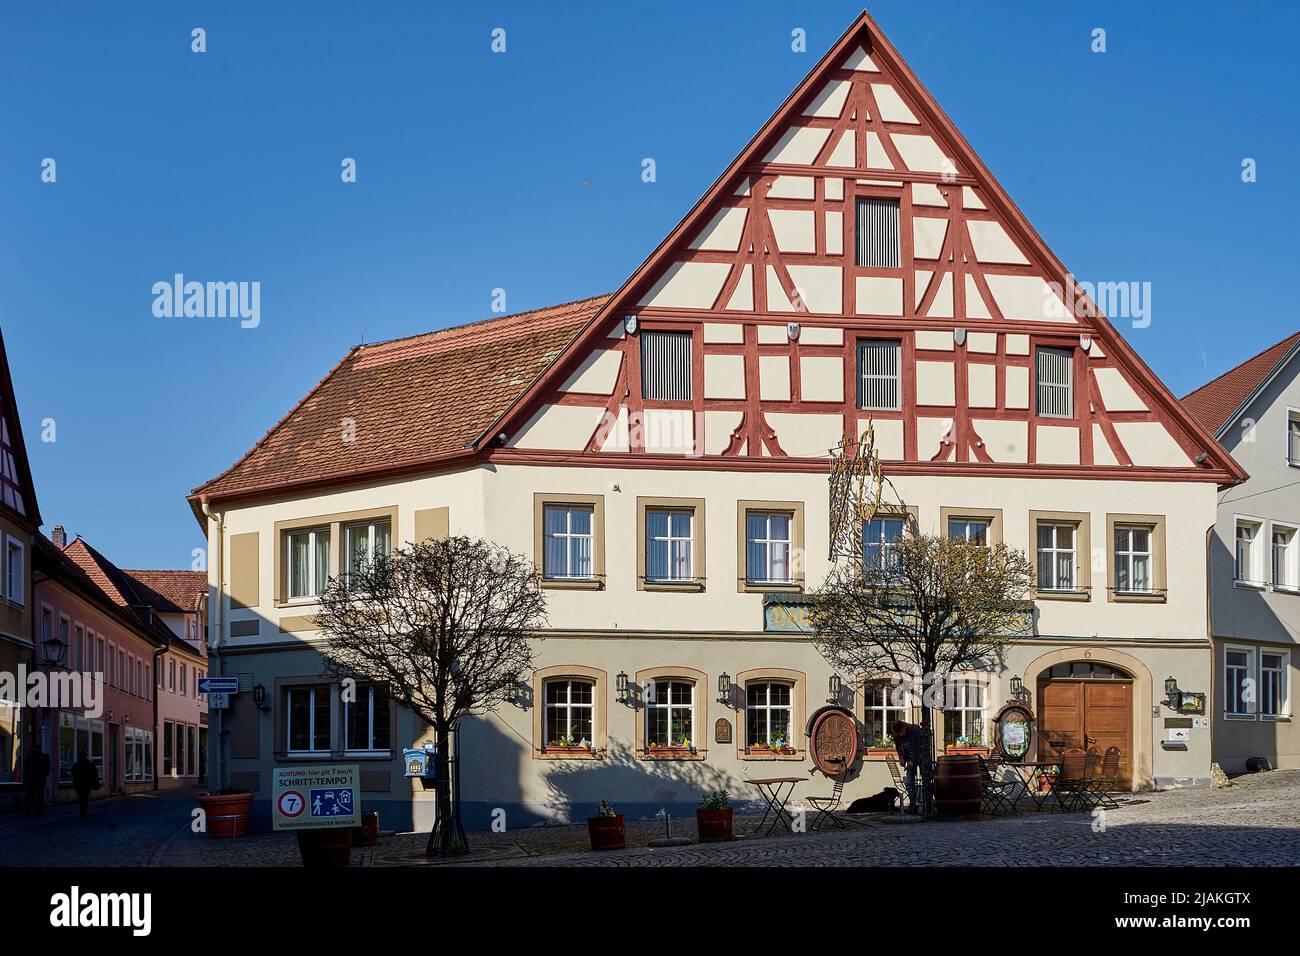 Gasthof 'Zum Storchen', das älteste bekannte Fachwerk-Bürgerhaus von Bayern, breiter Massivbau mit Fachwerk, am Weinmarkt, Bad Windsheim, Bayern, D. Foto de stock